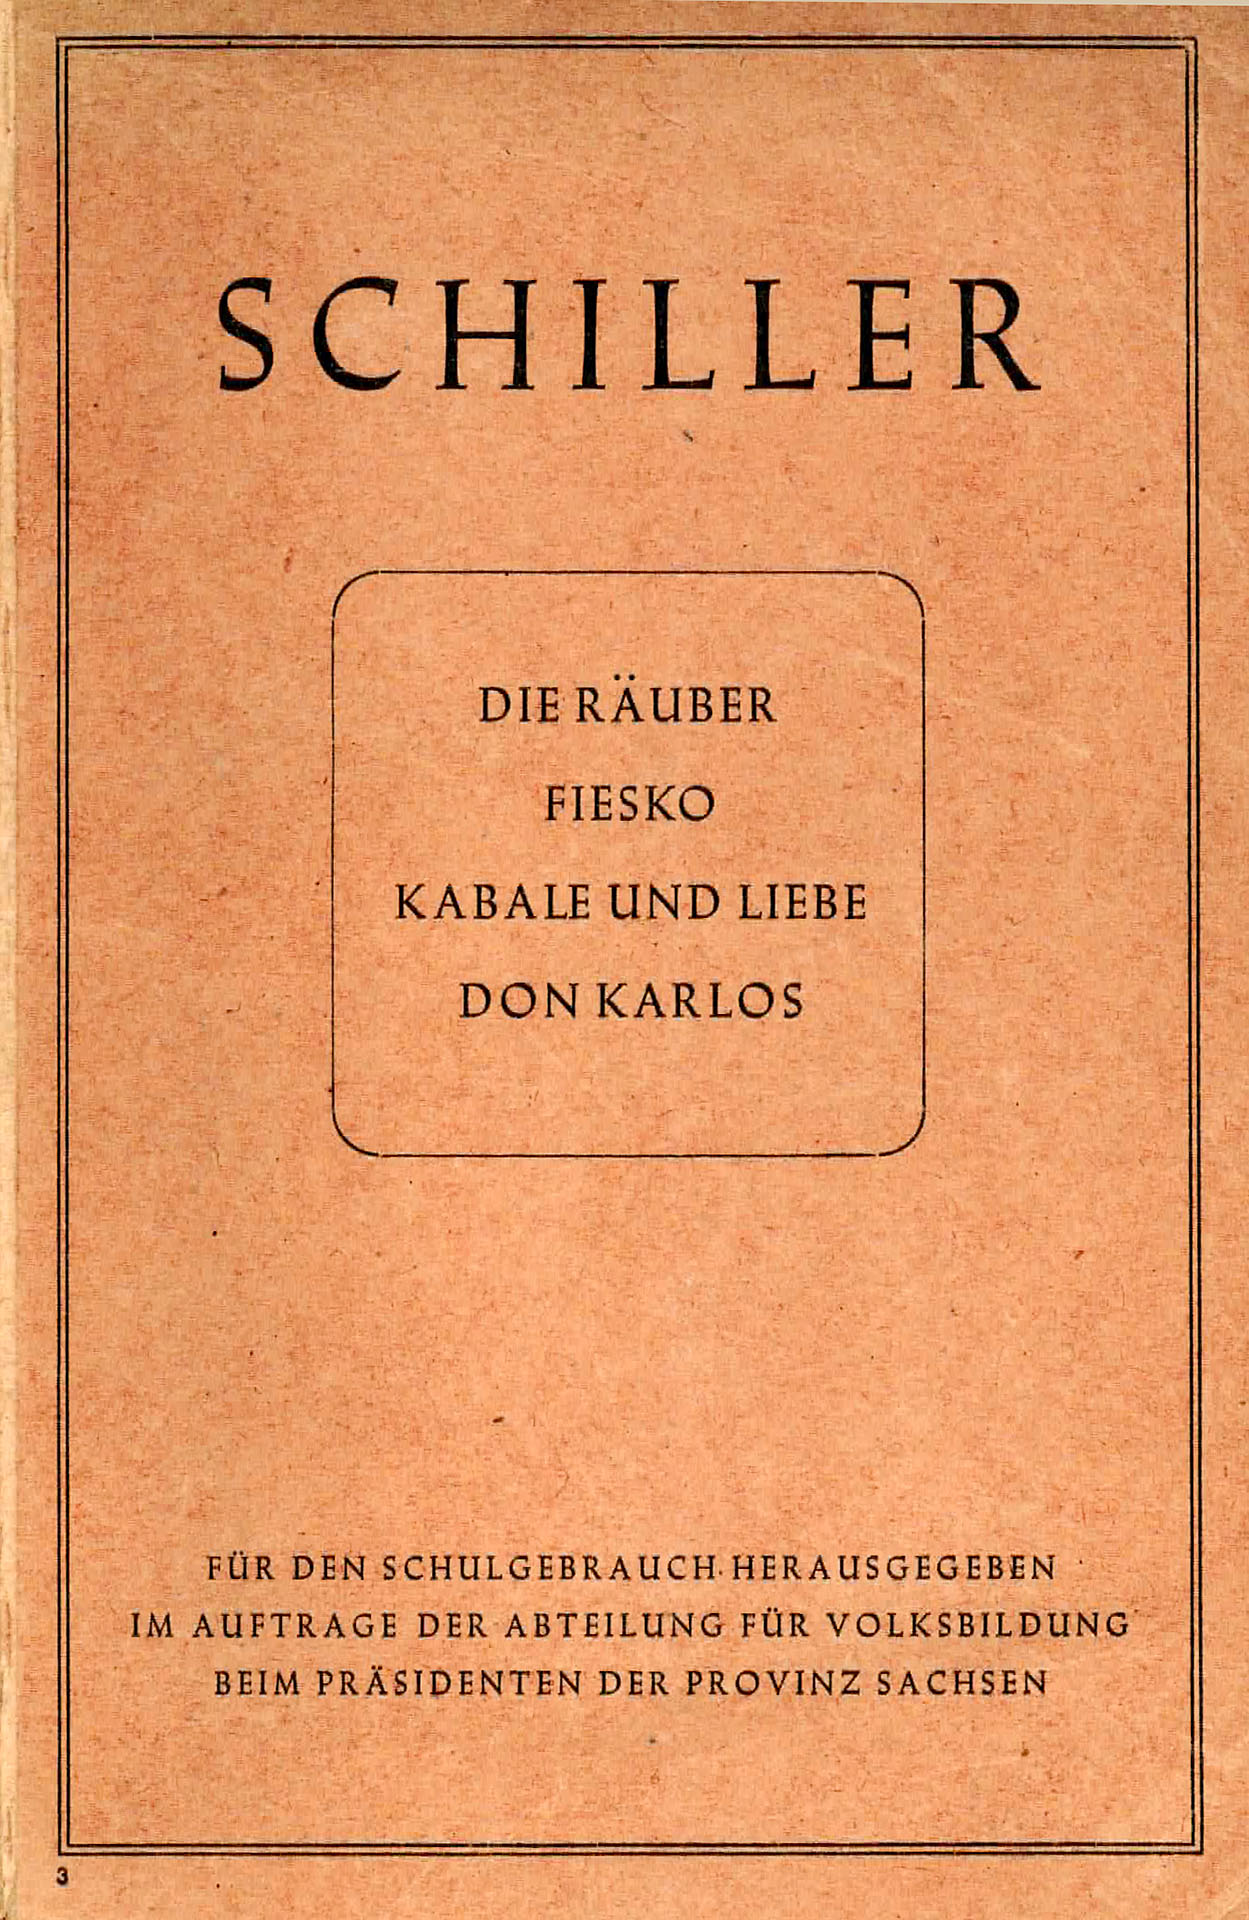 Die Räuber - Fiesko - Kabale und Liebe - Don Karlos - Schiller, Friedrich